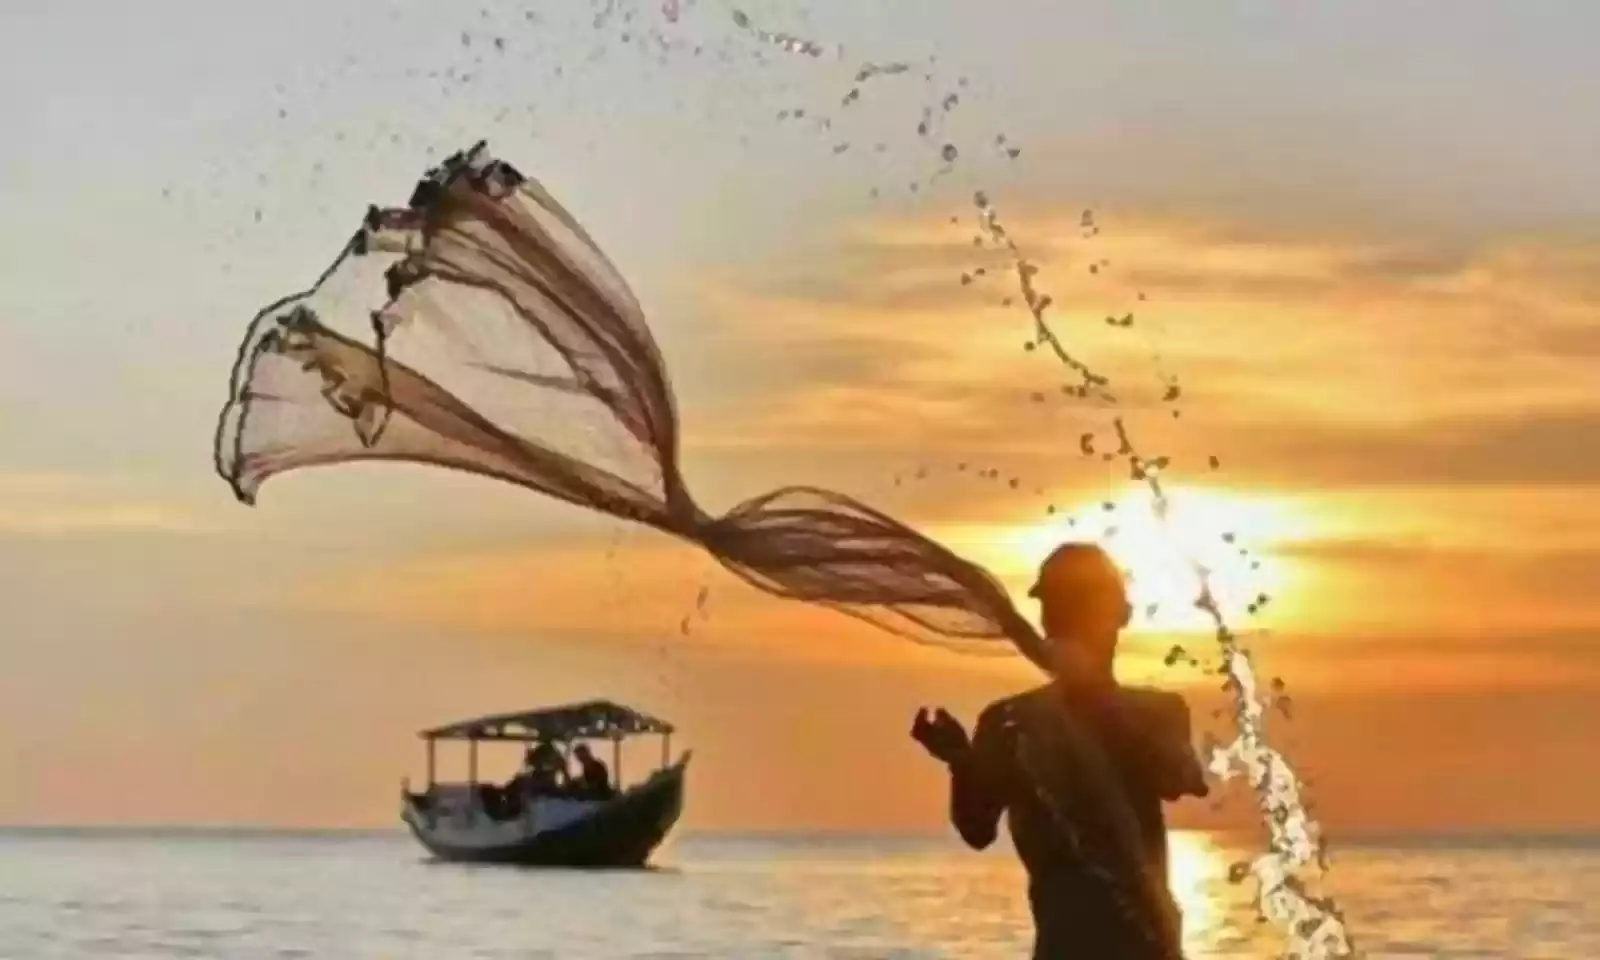 19 Fishermen Detained By Sri Lanka Return Home